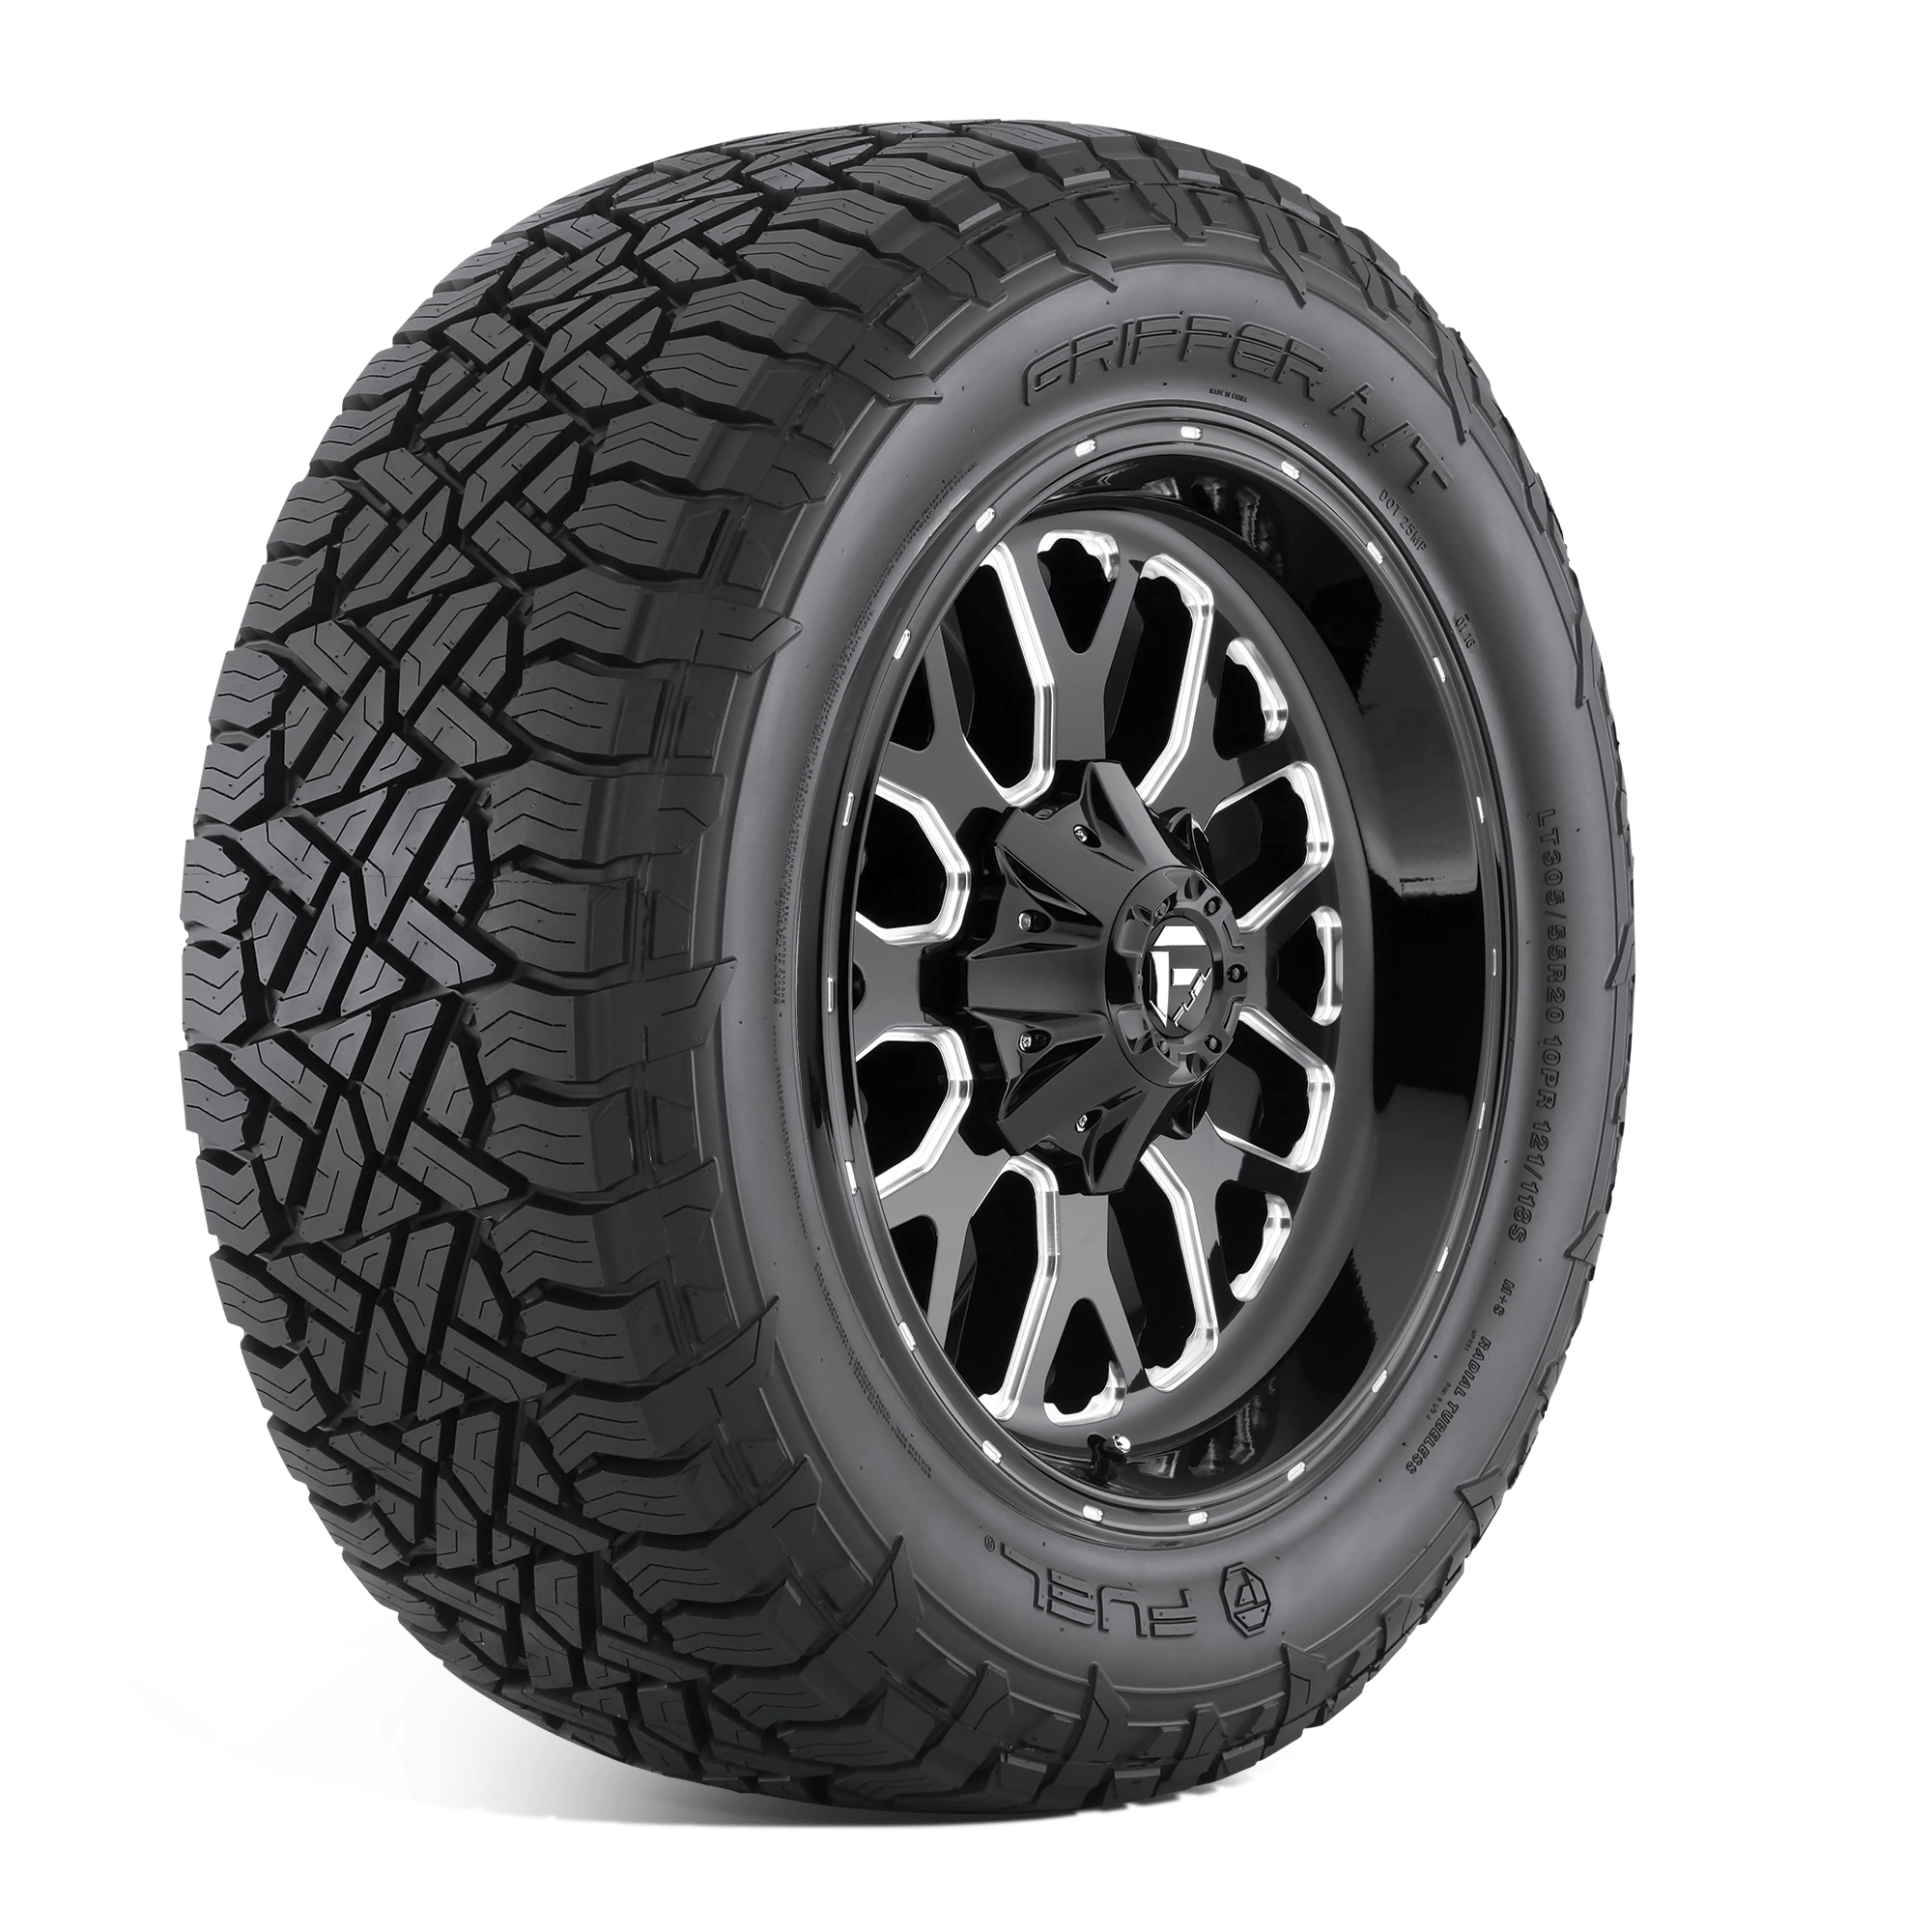 FUEL GRIPPER AT 265/65R17 (30.5X10.4R 17) Tires